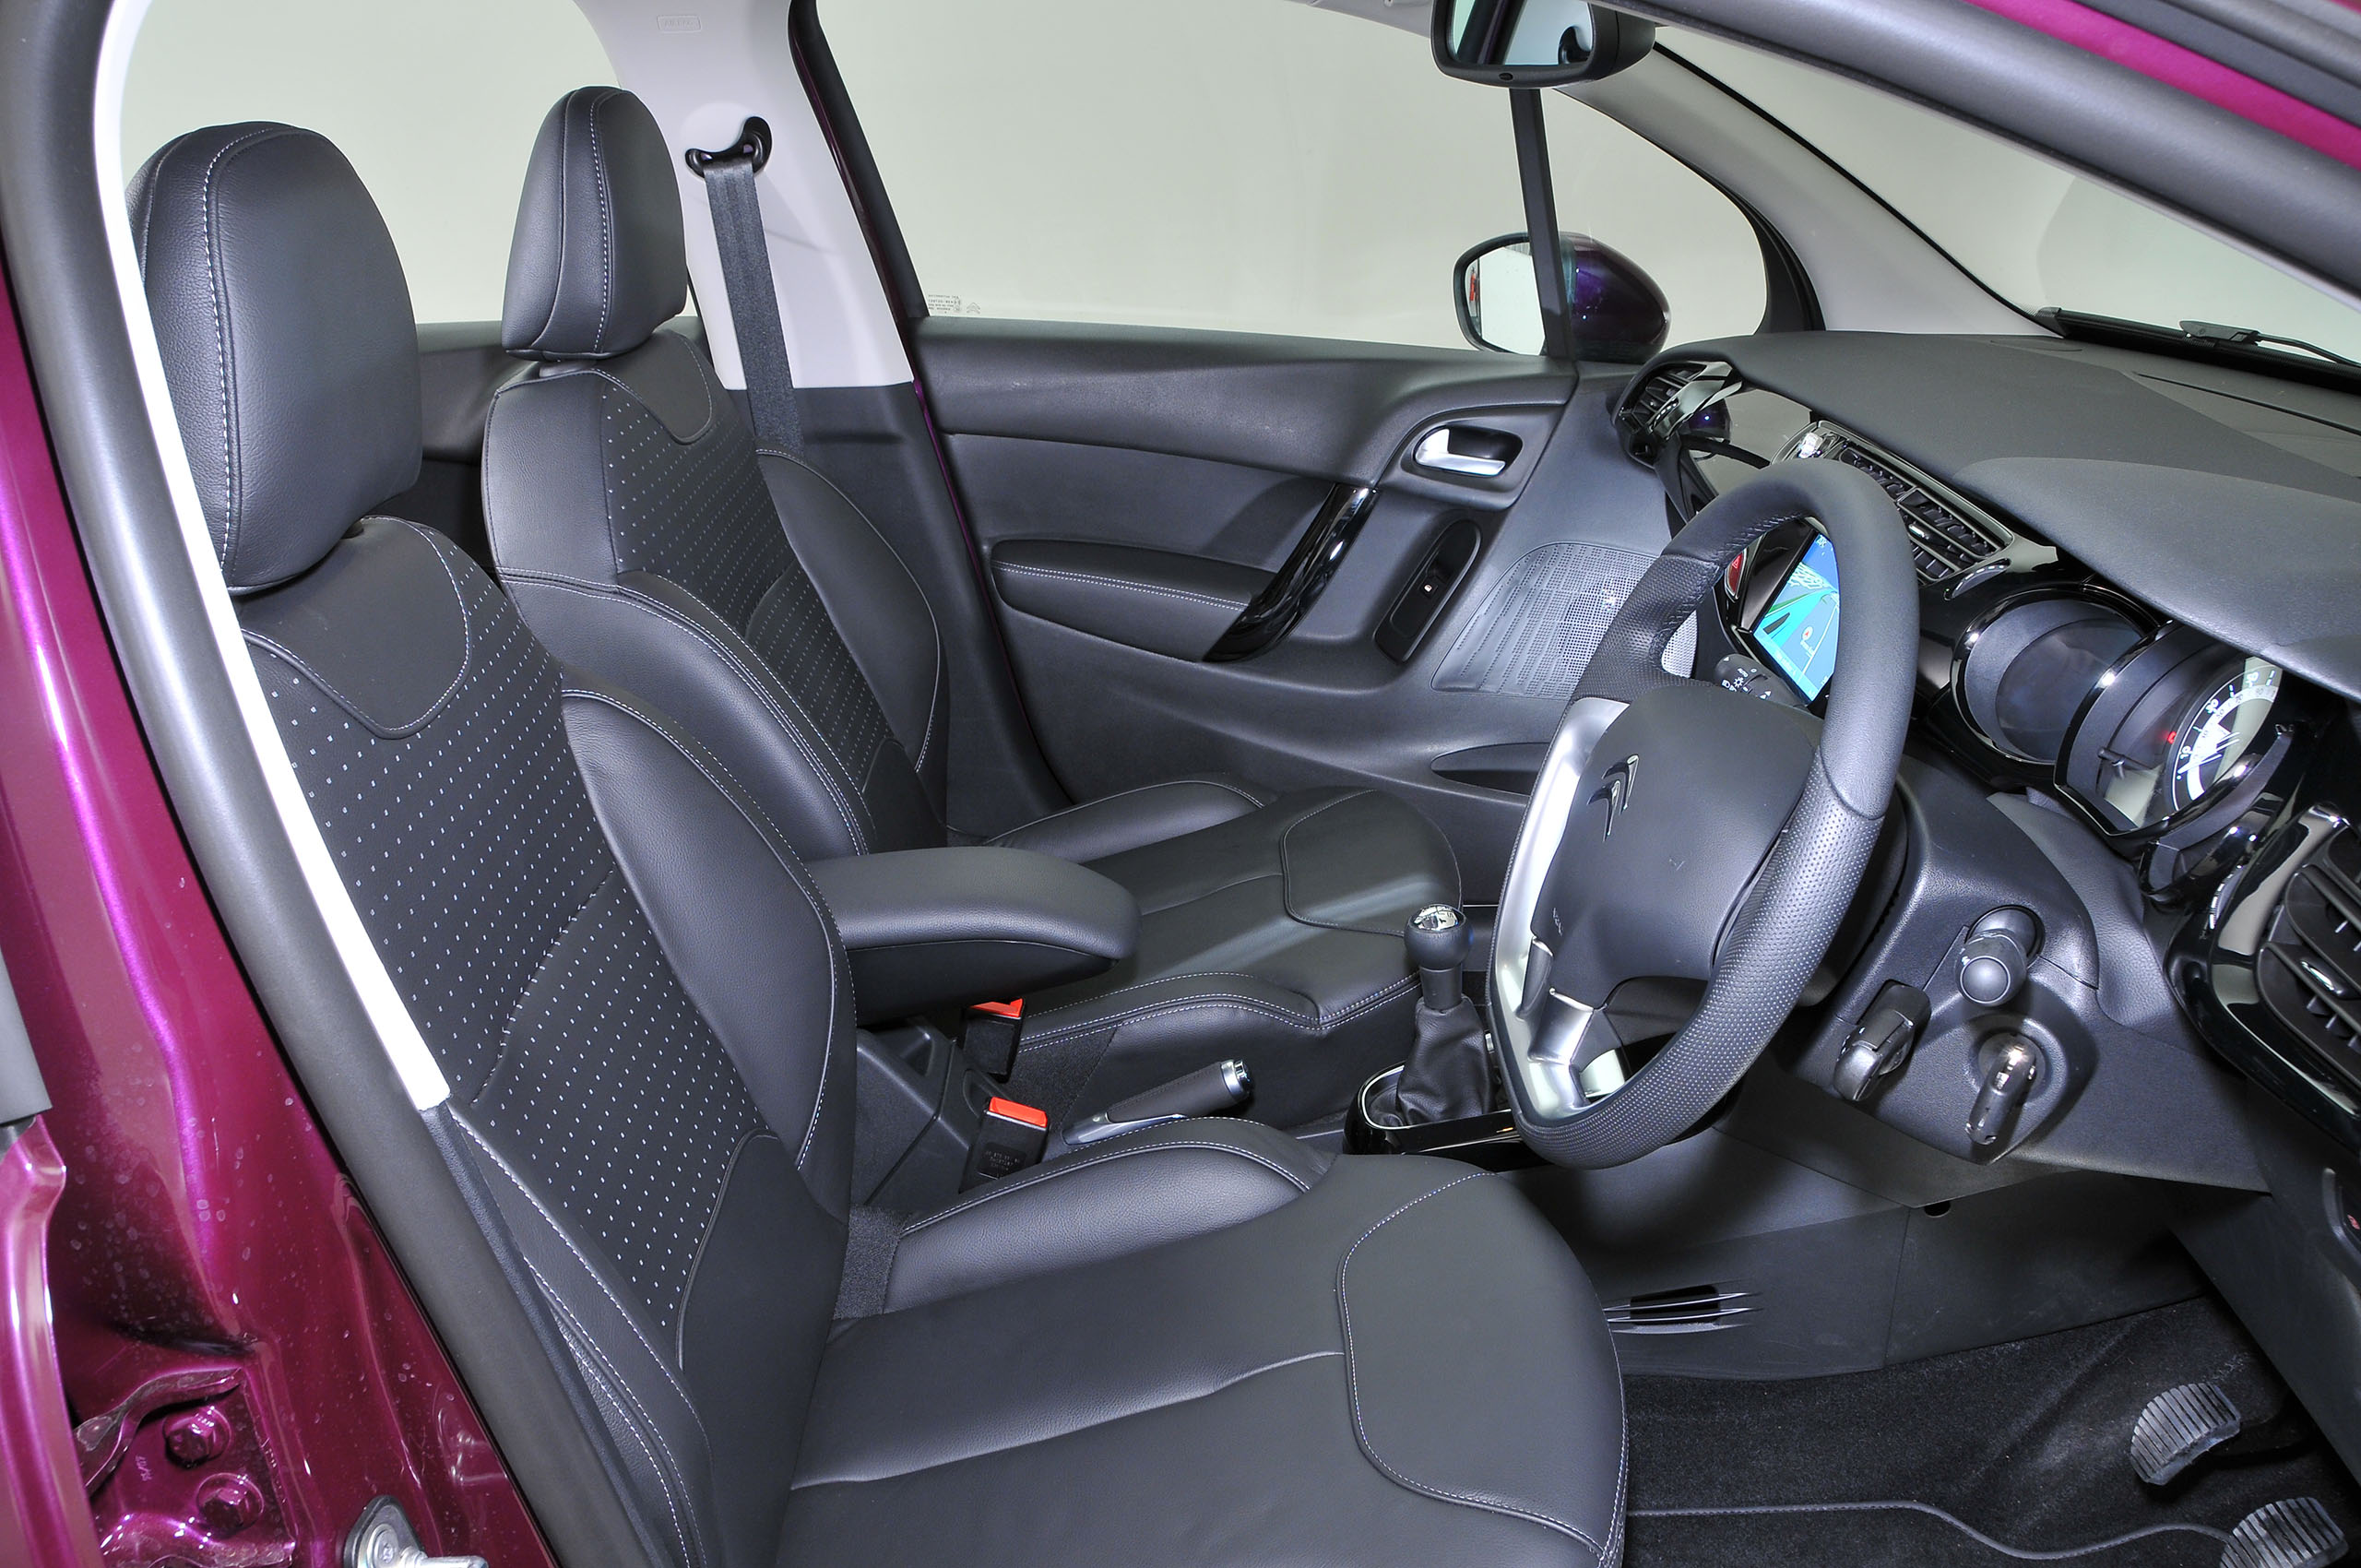 Citroën C3 interior